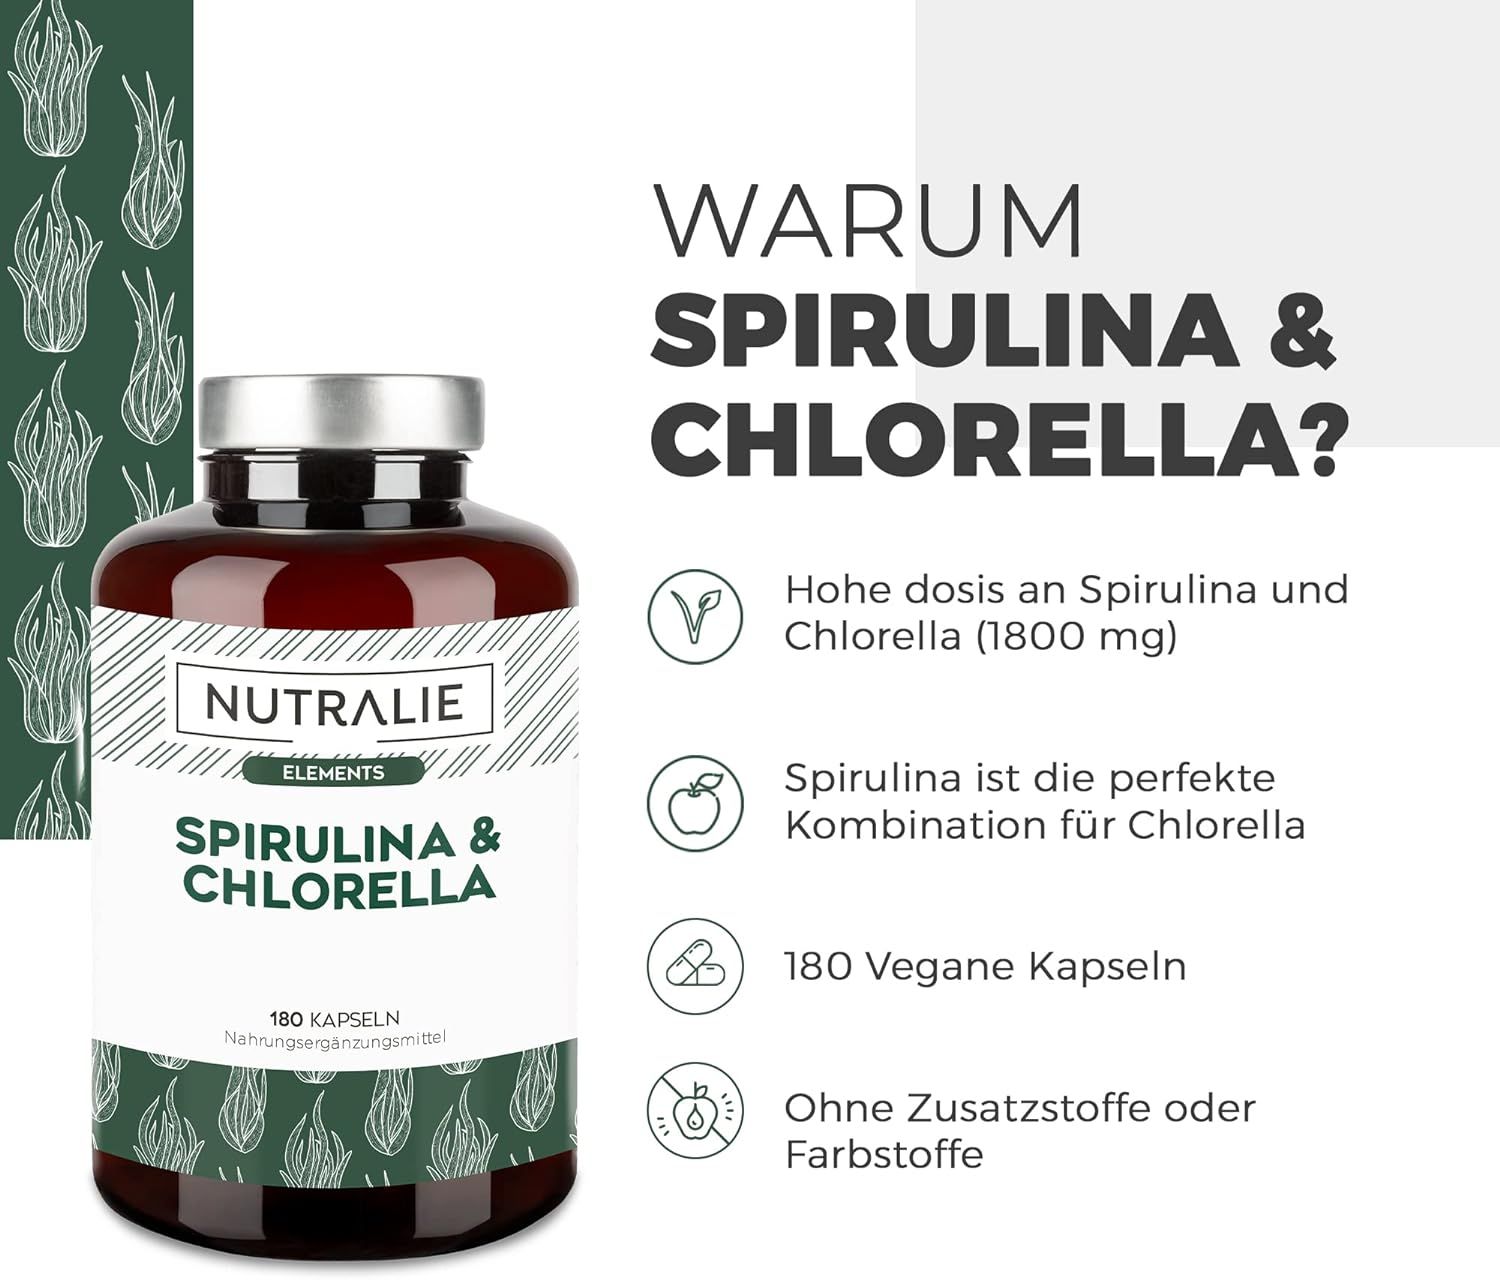 Nutralie Spirulina & Chlorella